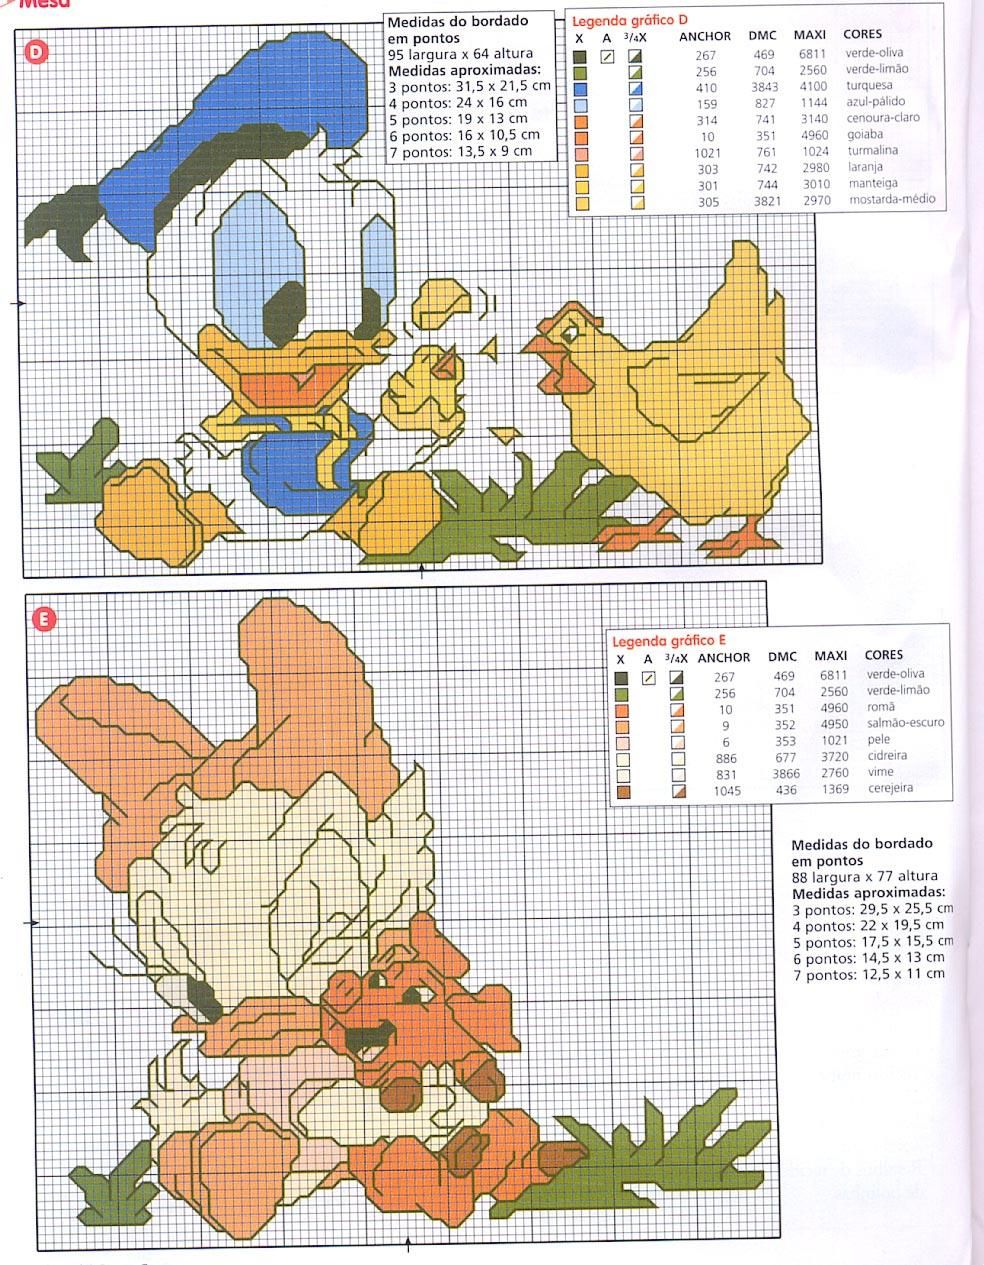 Beautiful Disney cross stitch patterns (2)